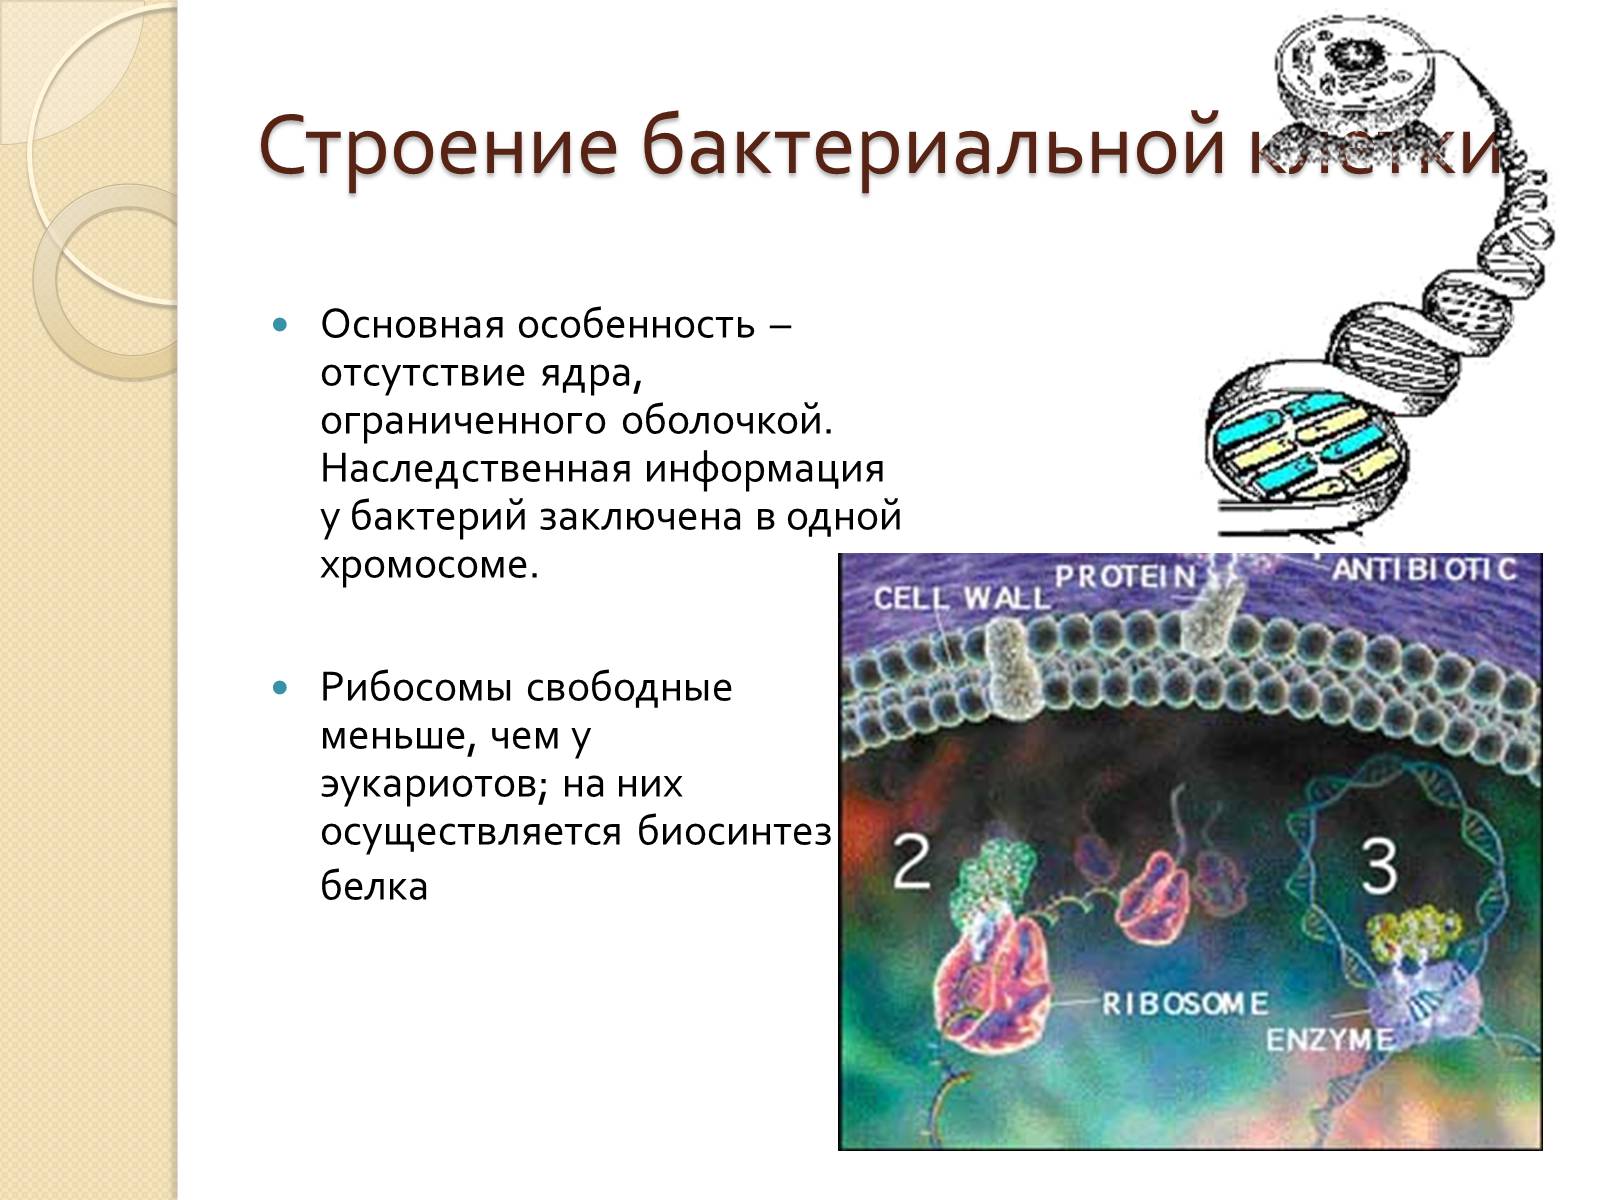 Общая организация клетки. Типы клеточной организации. Наследственная информация у бактерий. Основные типы организации клетки. Генетическая информация бактерий.